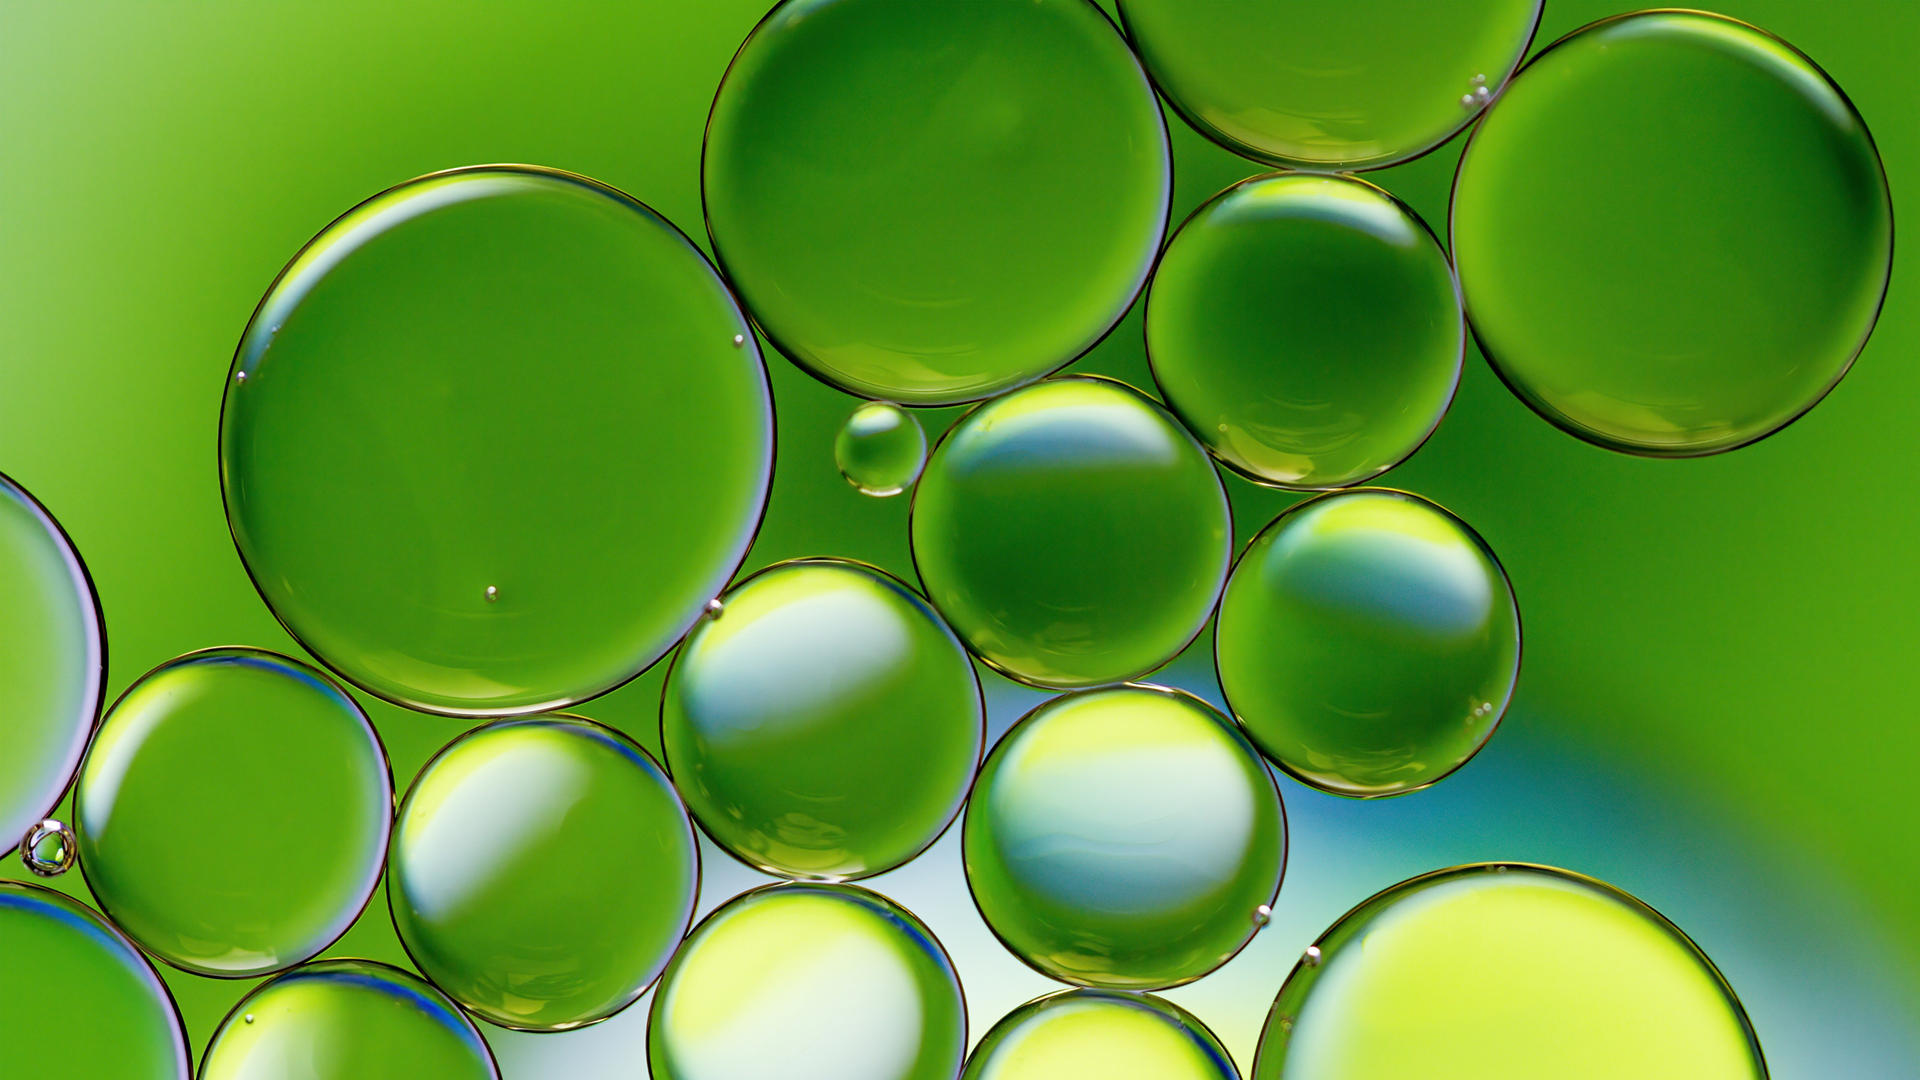 Imagen en colores vivos de gotas de aceite flotando en el agua